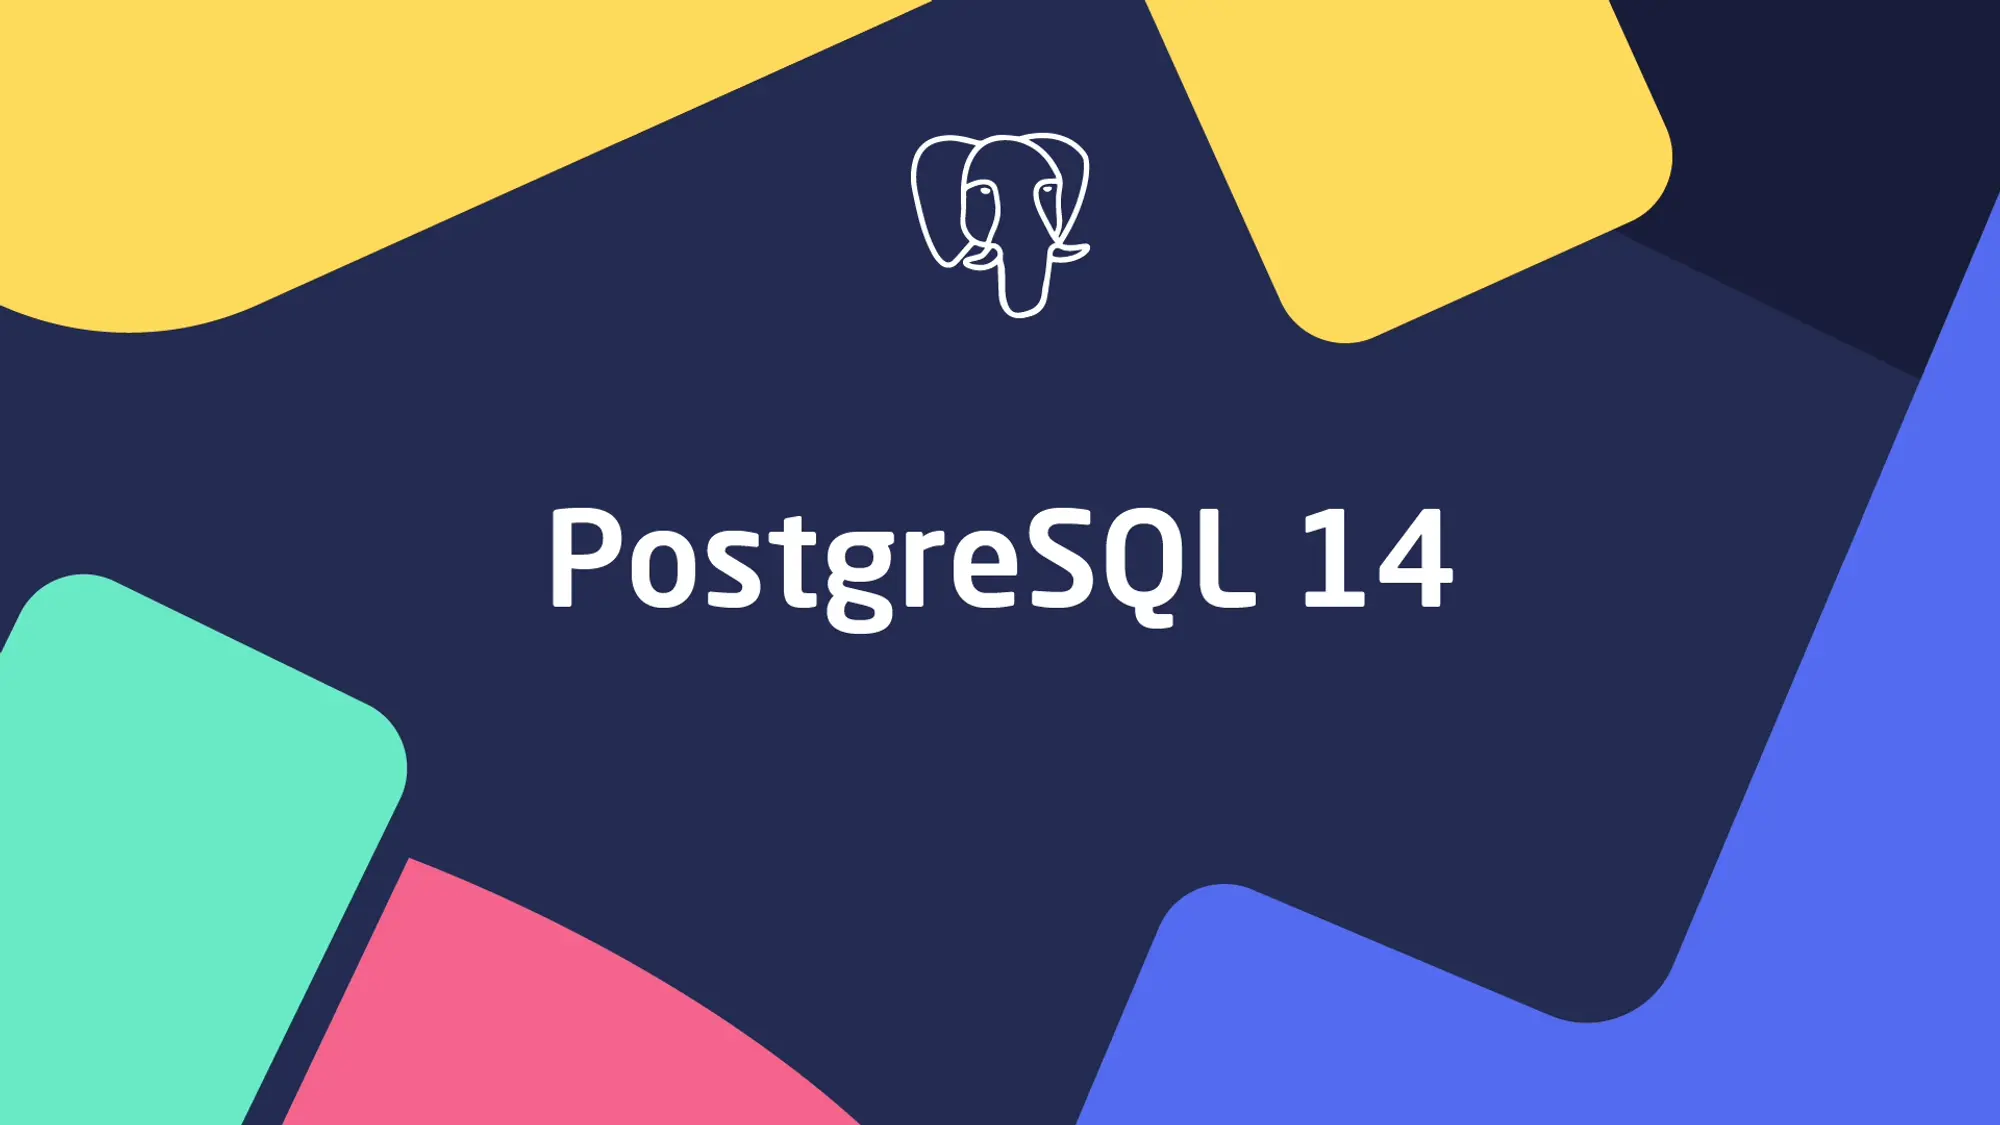 What's New in PostgreSQL 14?